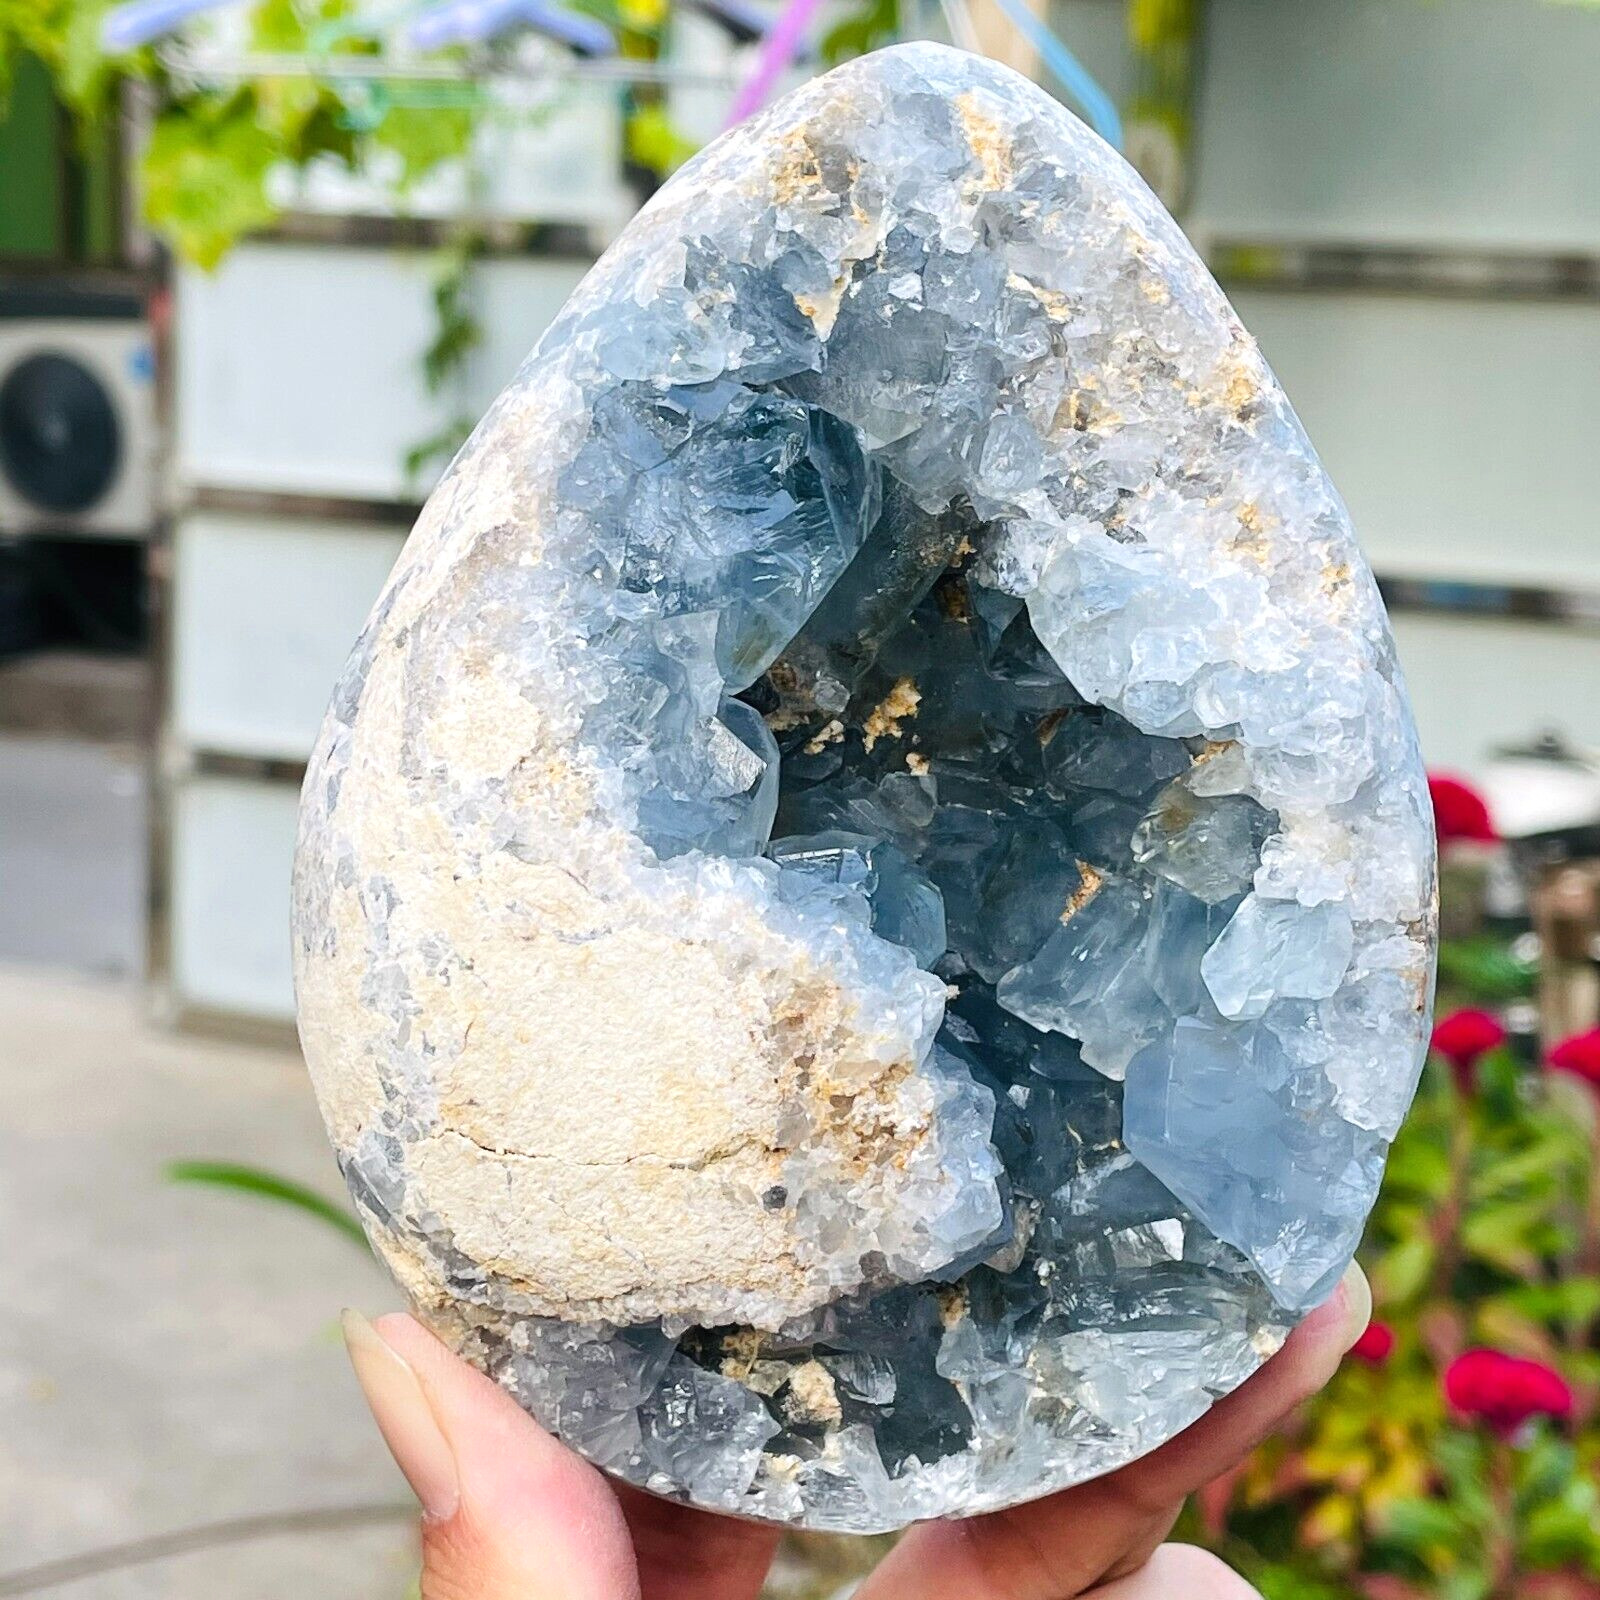 3.25lb Large Natural Blue Celestite Quartz Crystal Egg Geode Specimen Healing